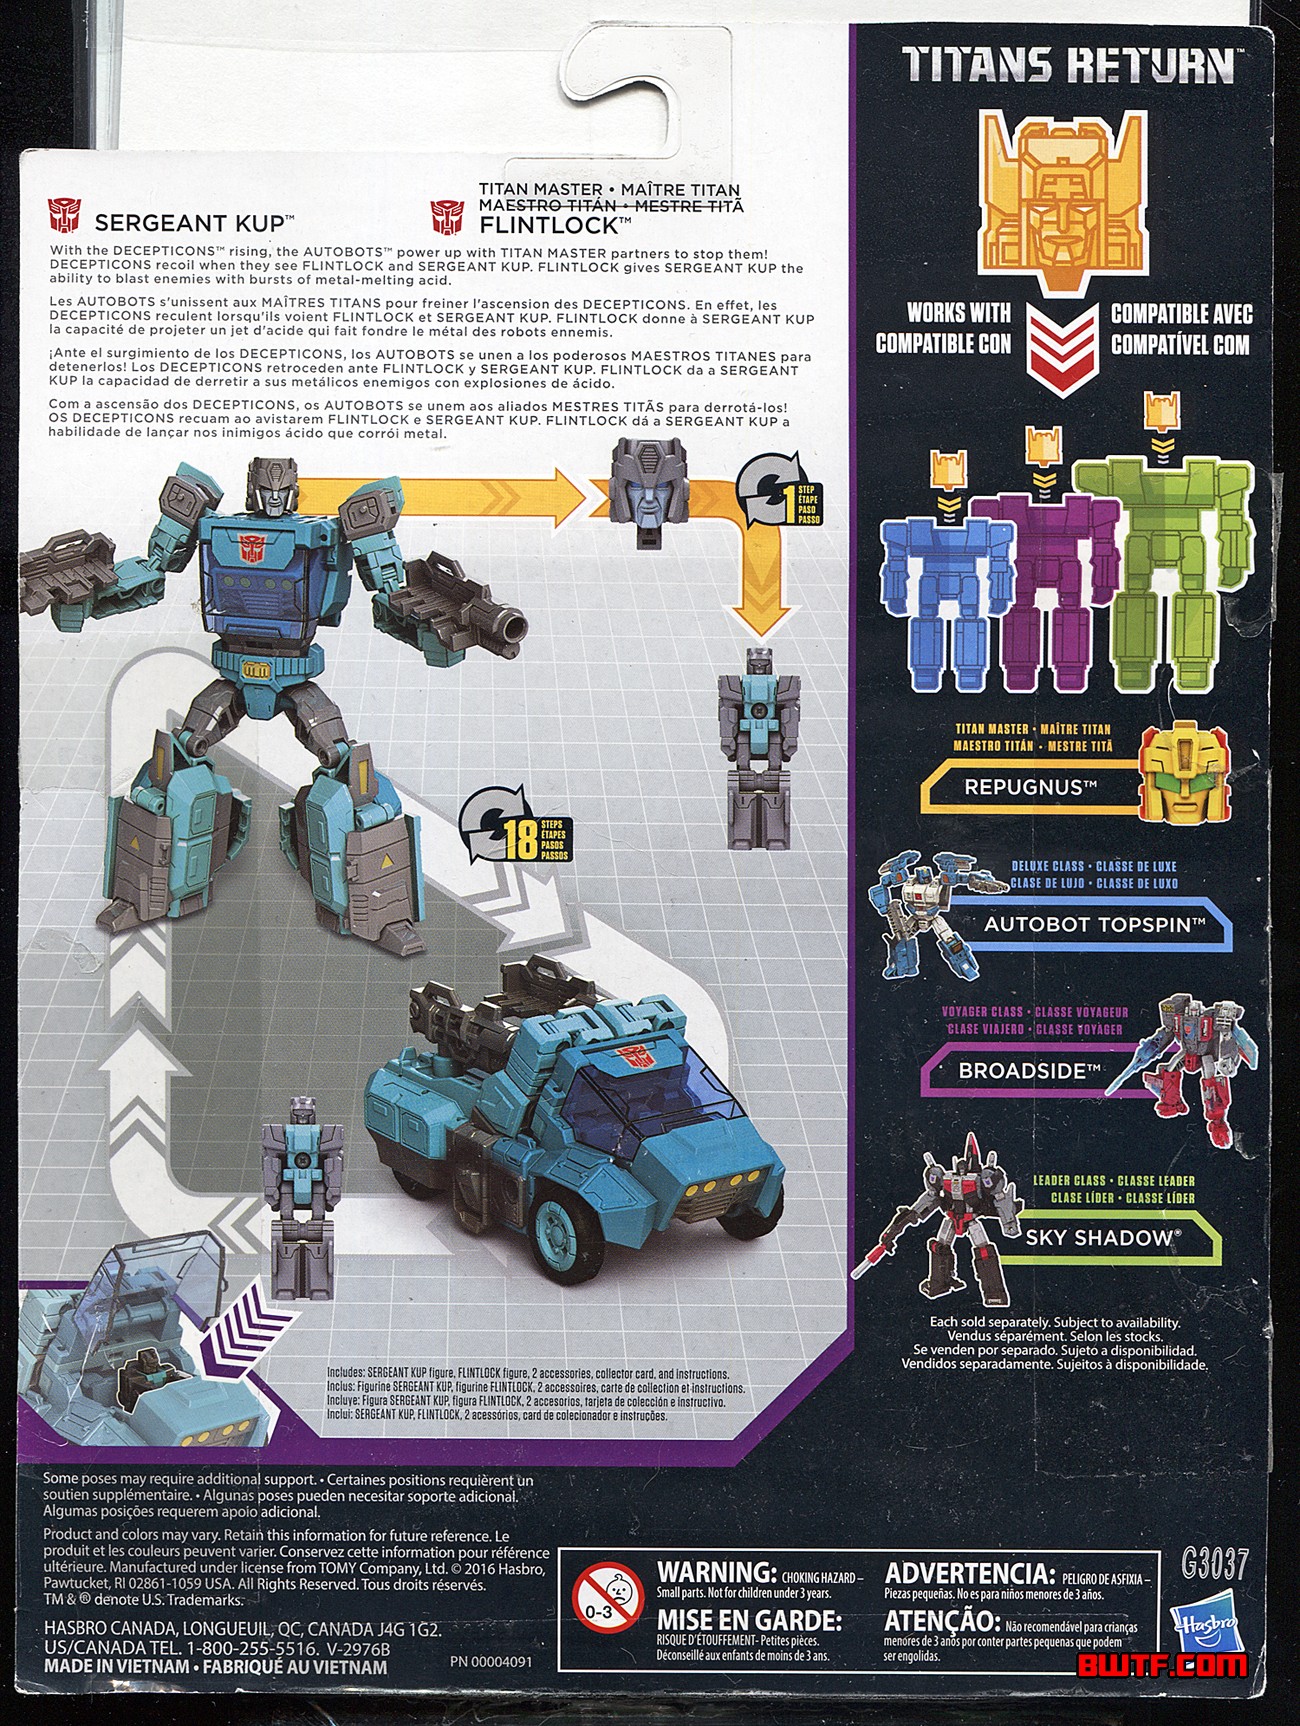 Jouets Transformers Generations: Nouveautés Hasbro - partie 3 - Page 2 1483123542-k2